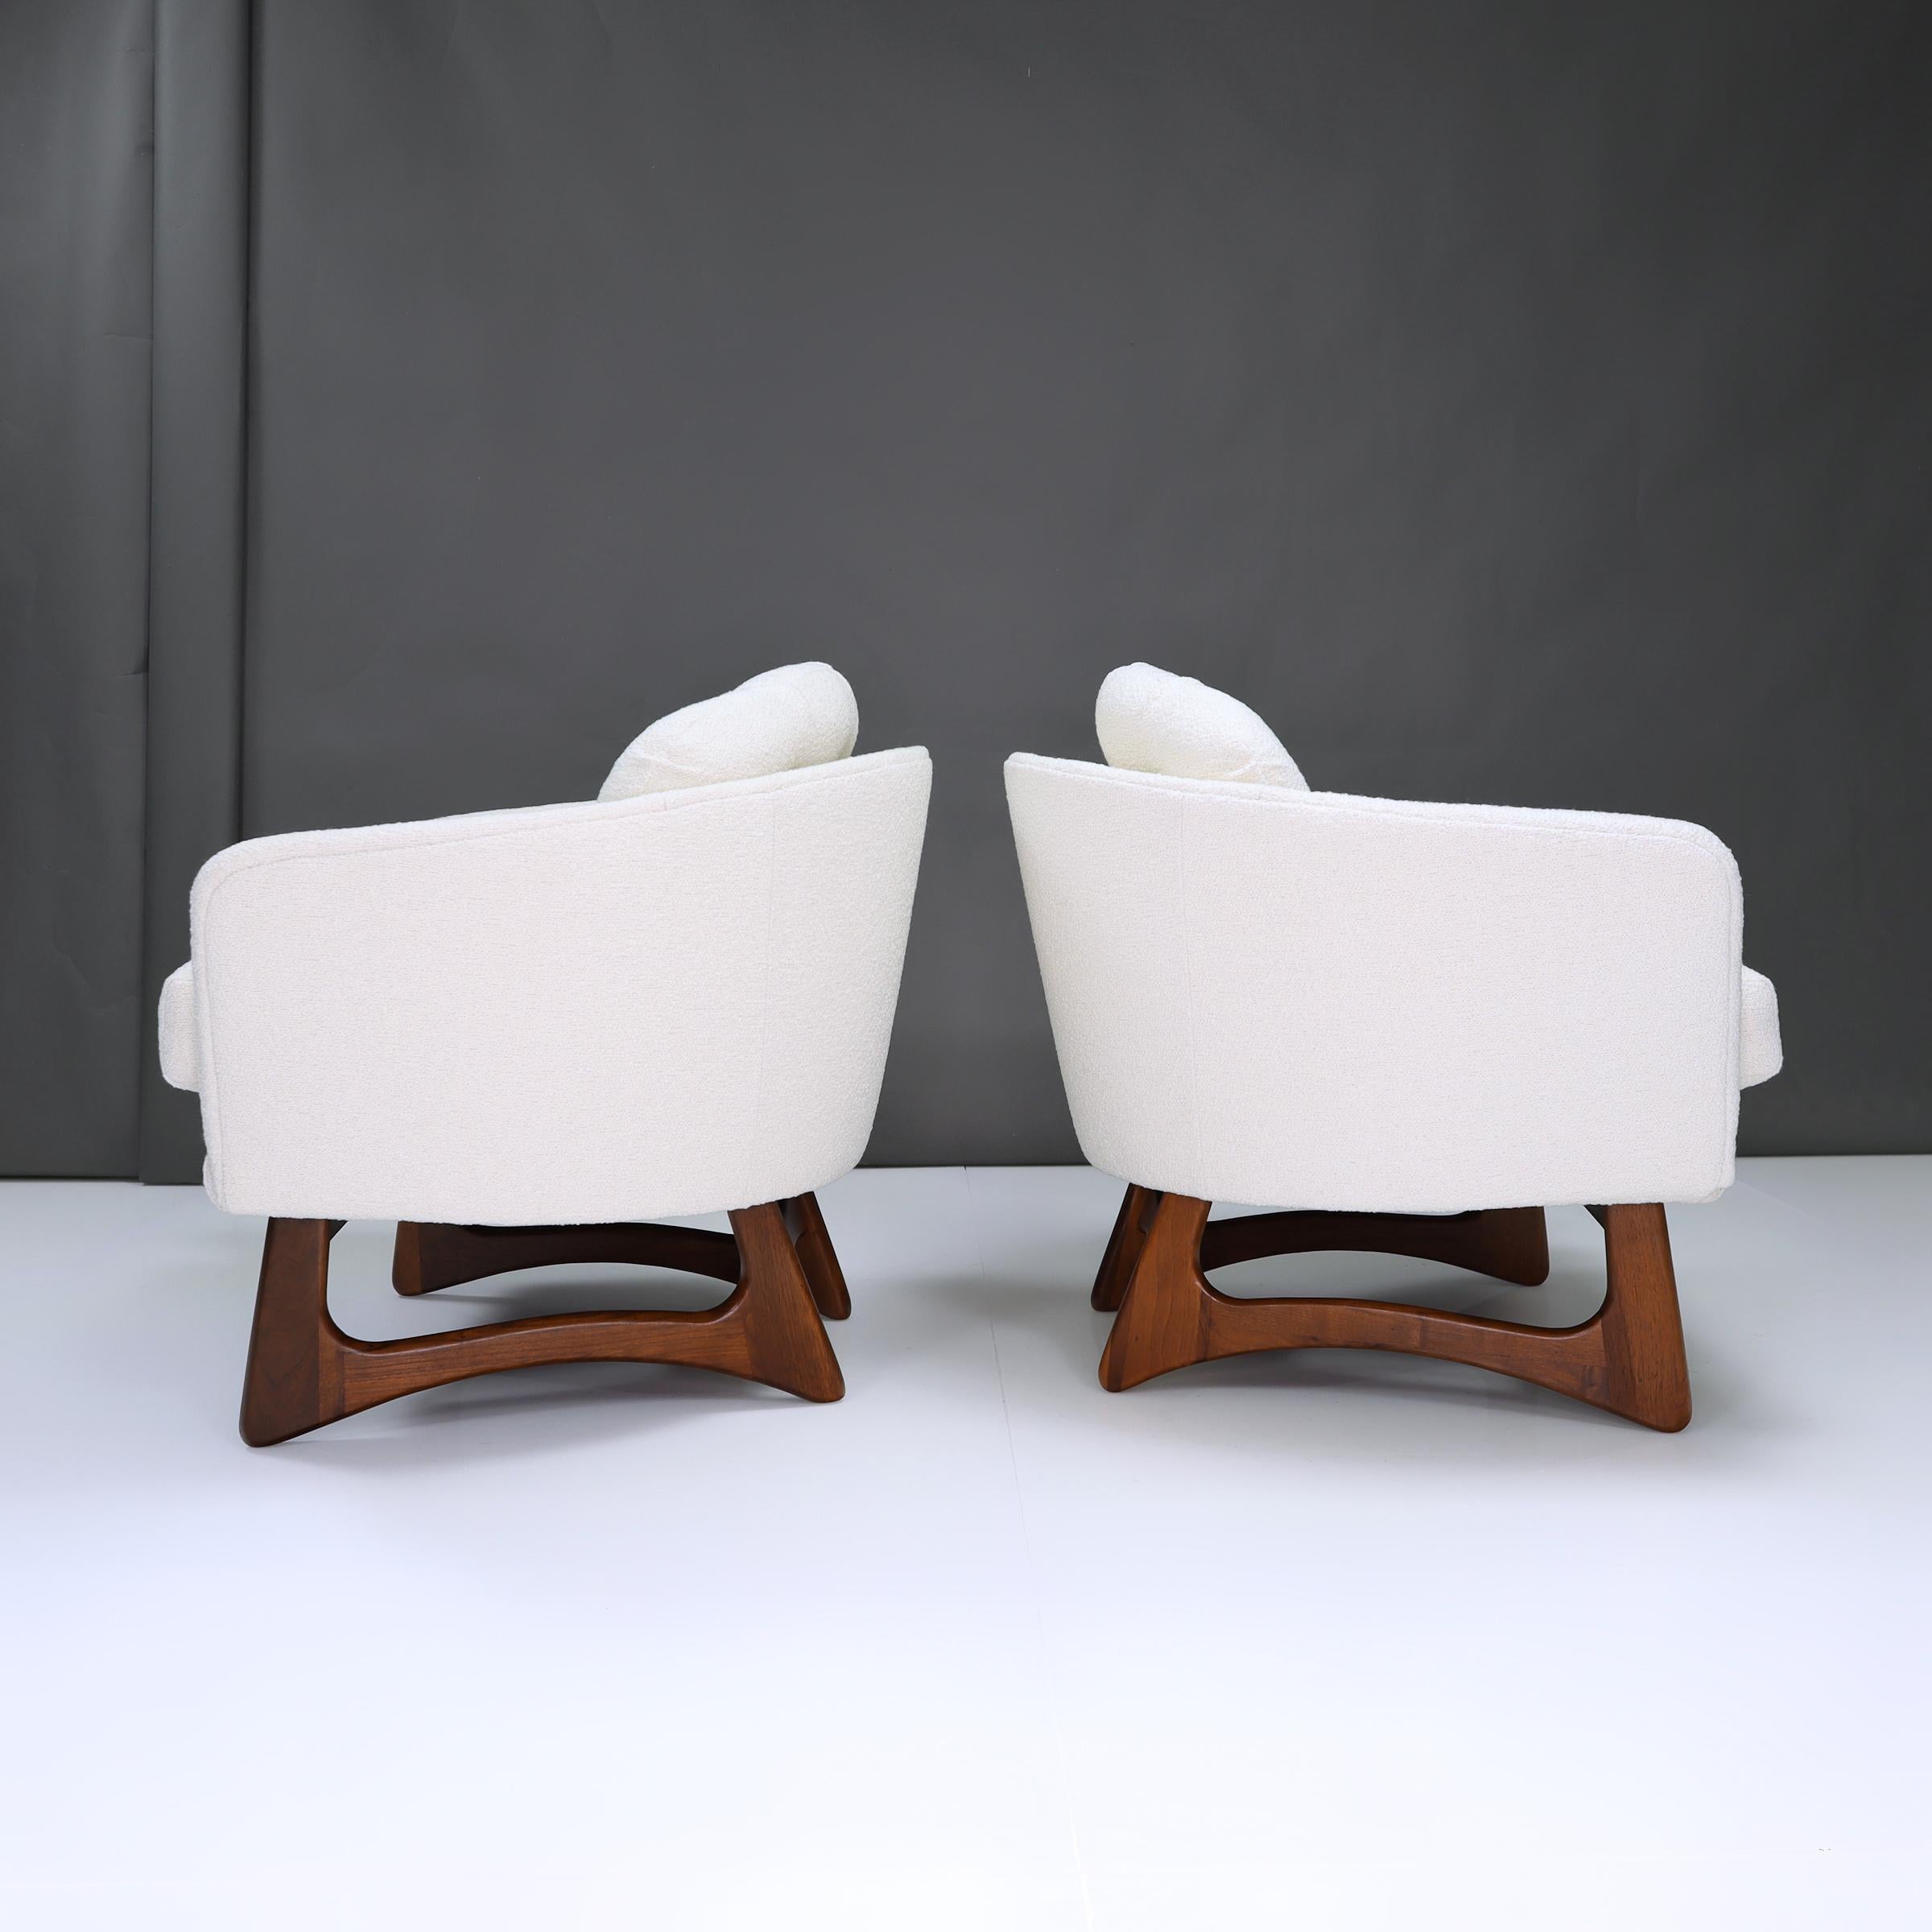 Mit den Adrian Pearsall Barrel Back Lounge Sesseln erleben Sie den Gipfel des modernen Komforts. Hier trifft Entspannung nahtlos auf Stil.

Diese exquisiten Stücke sind wie eine elegante, moderne Wolke, die einen unvergleichlichen Komfort